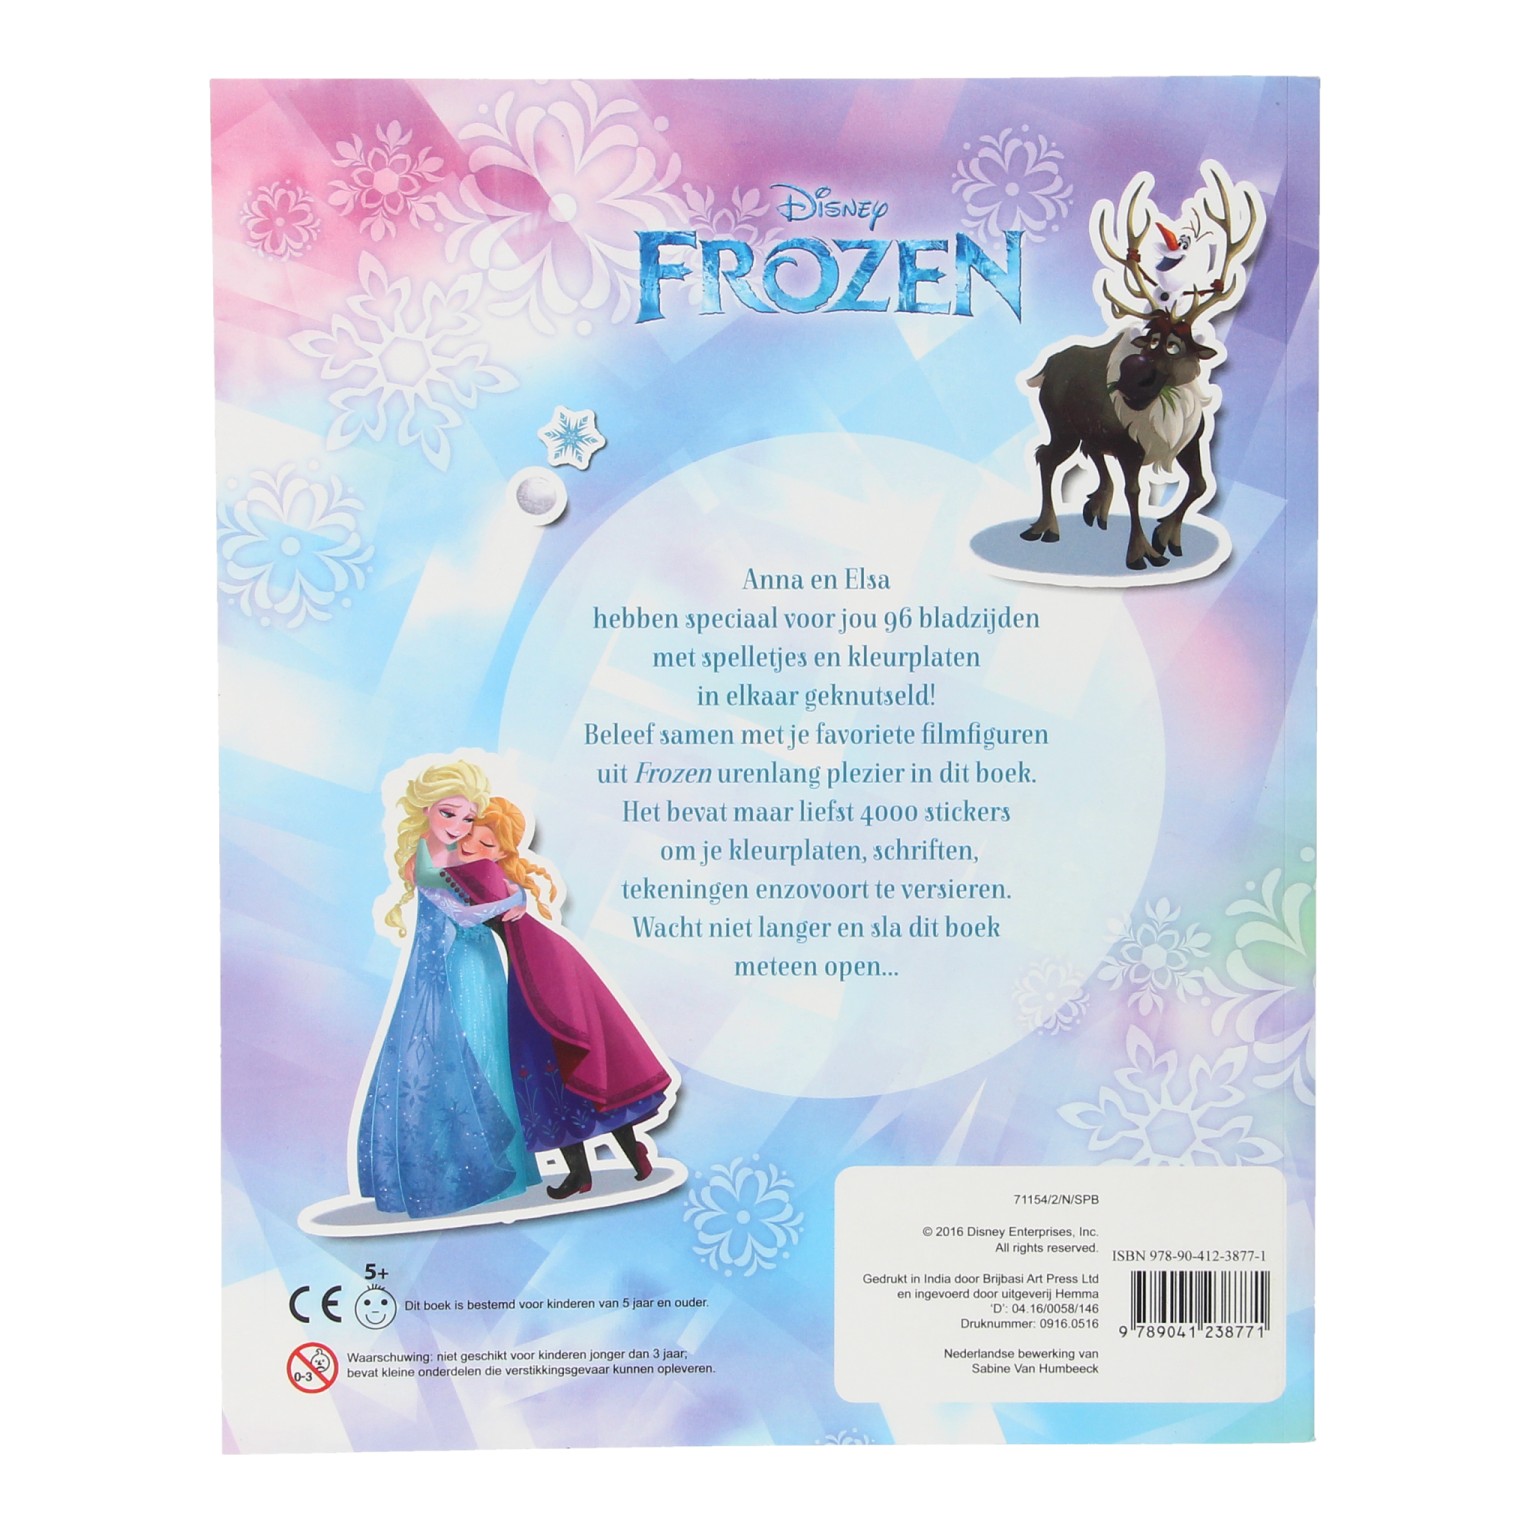 Disney Frozen 4000 Stickerboek